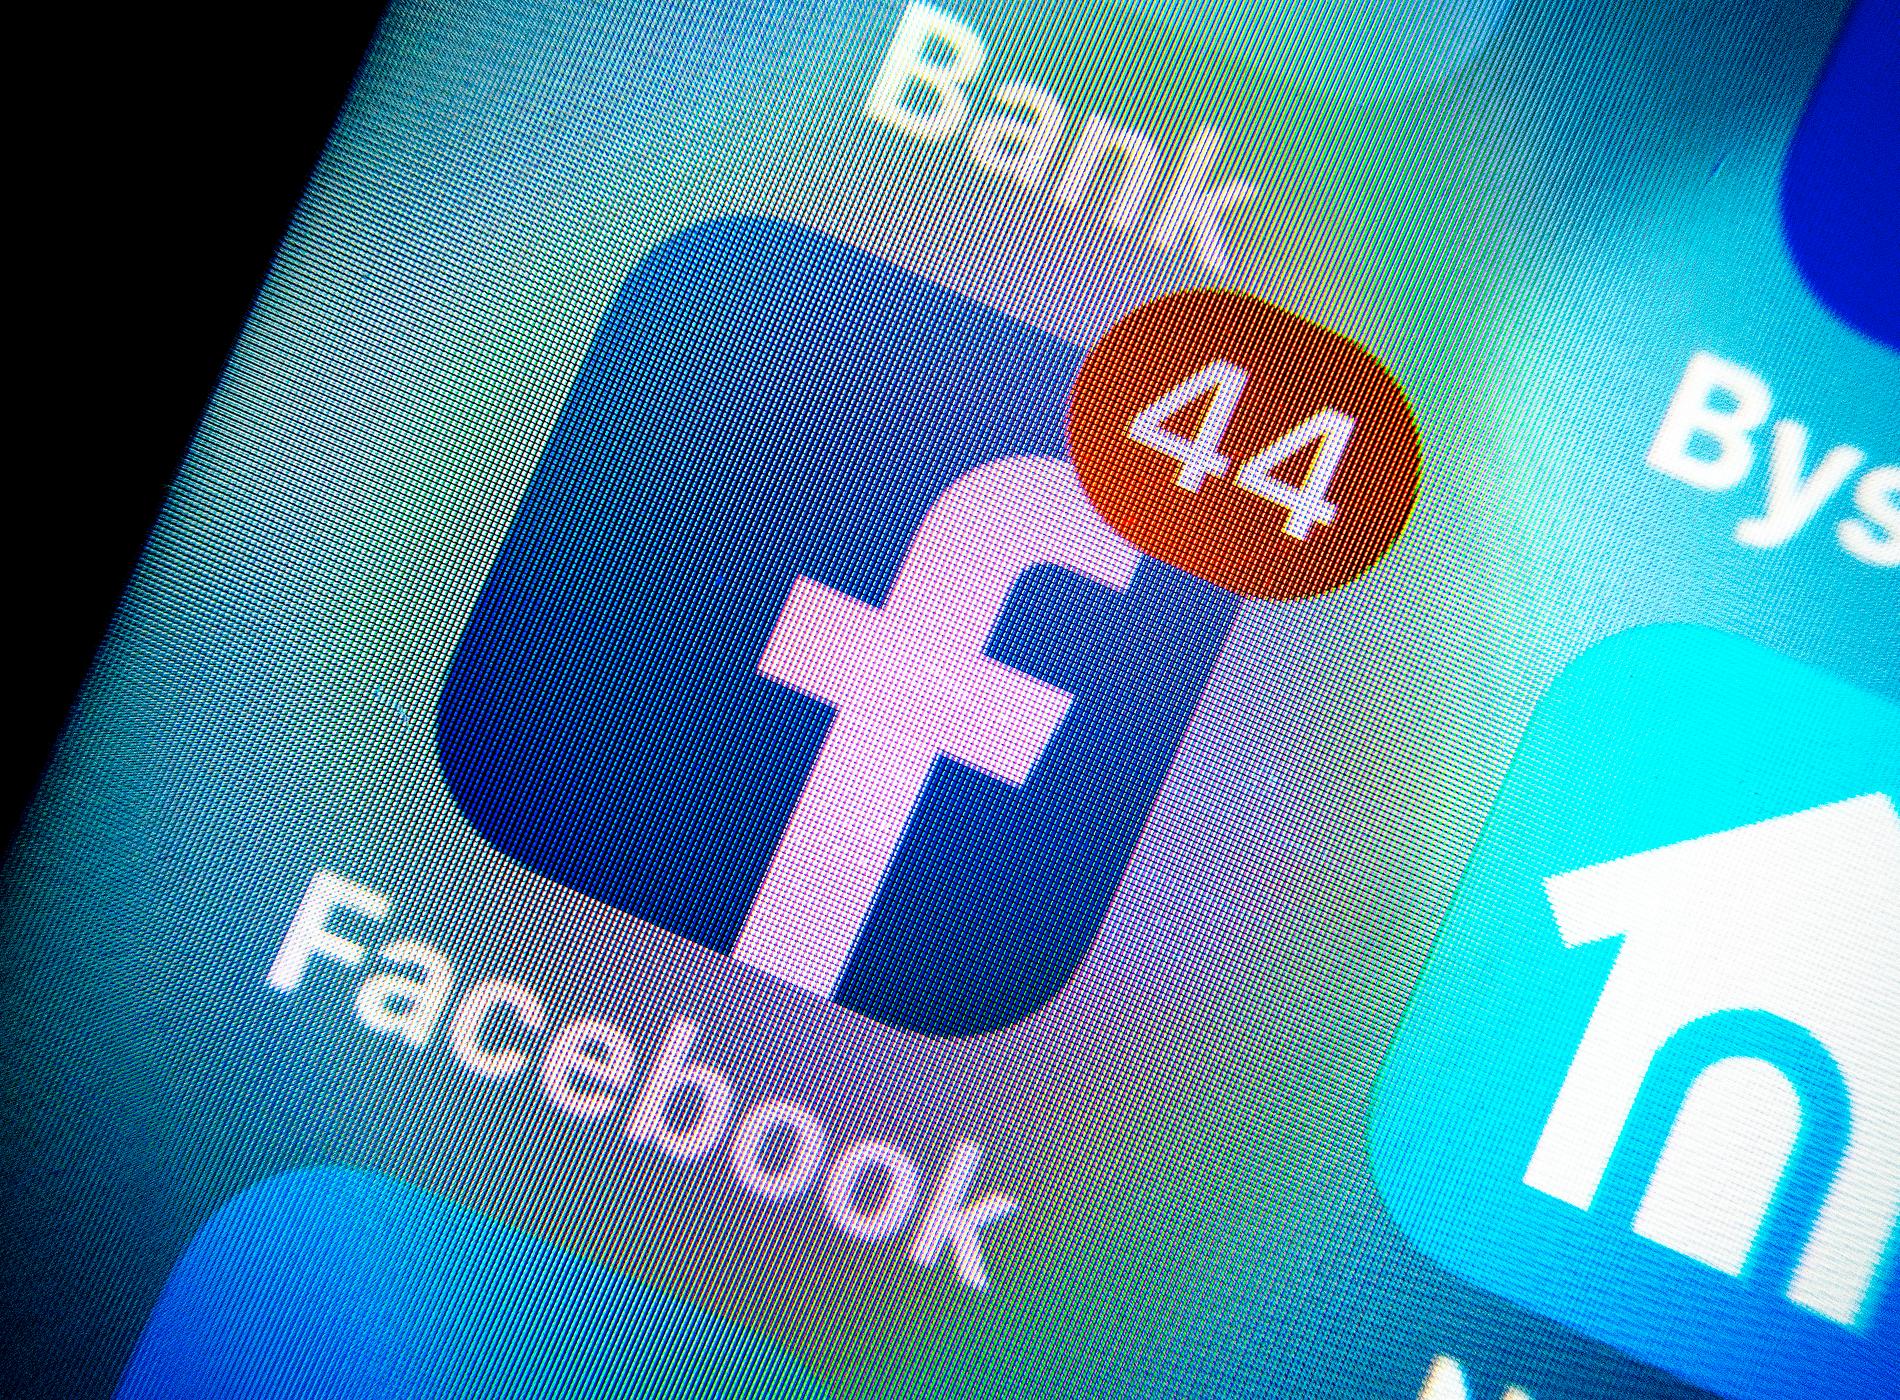 Saudiarabiens regering bedrev en förtäckt påverkanskampanj i sociala medier, uppger Facebook.